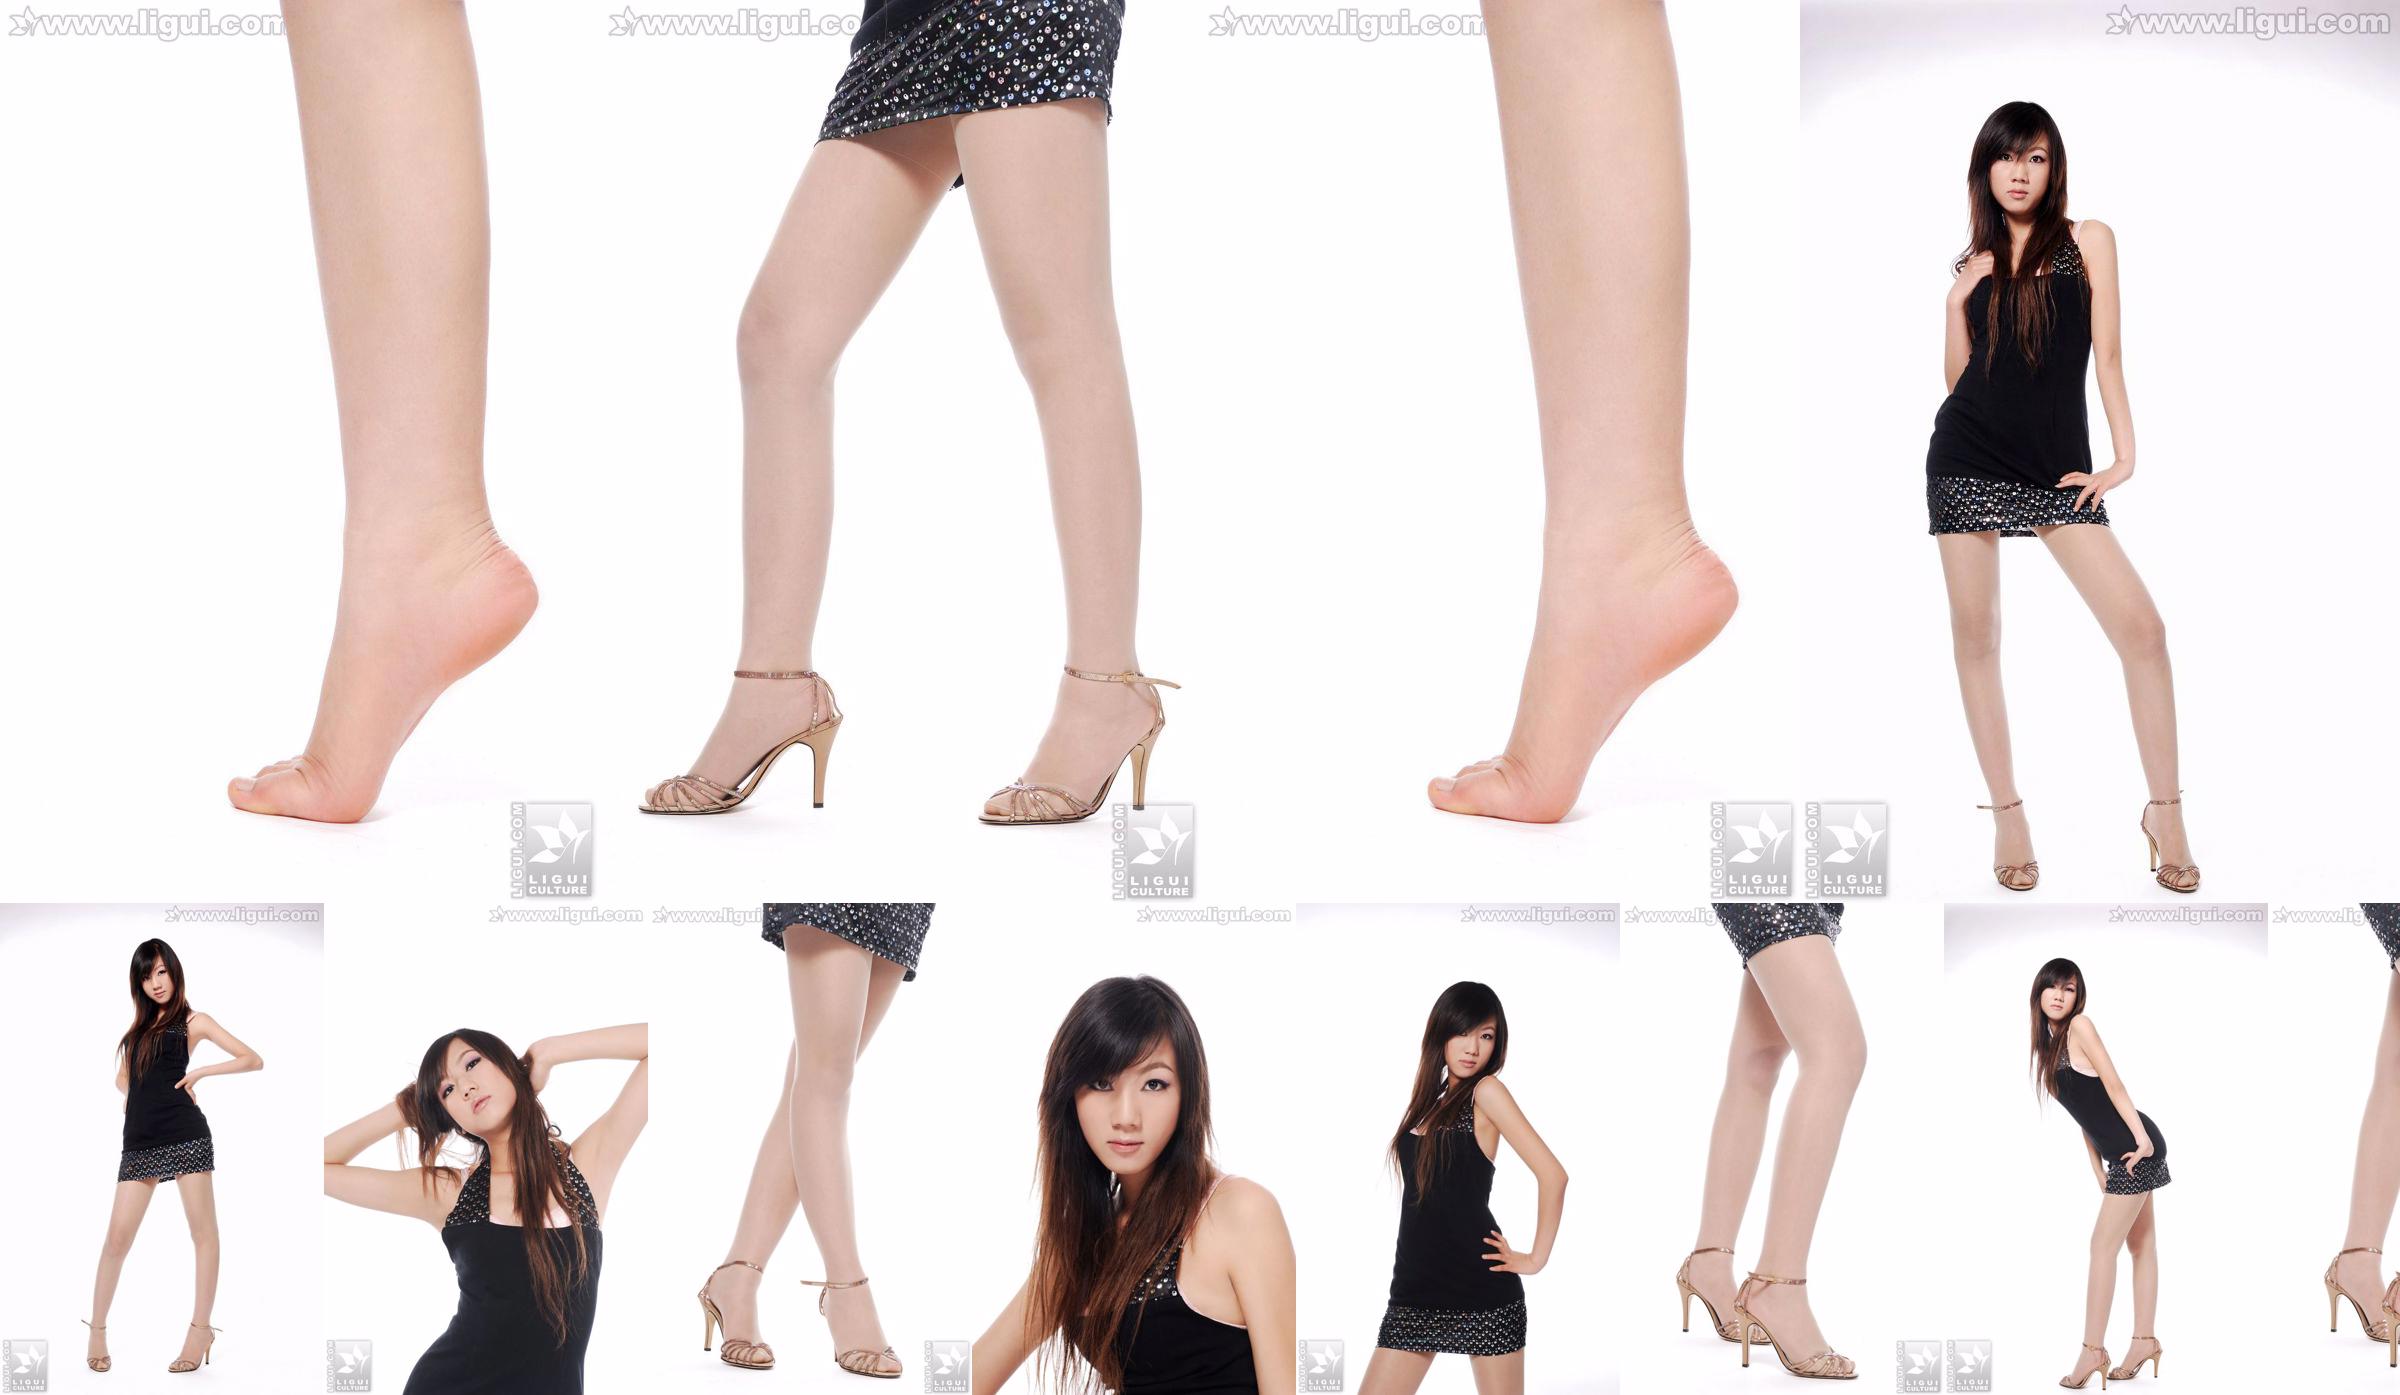 Modelo Sheng Chao "lindo novo show de pé de jade de salto alto" [Sheng LiGui] Foto de belas pernas e pé de jade No.0c242c Página 8